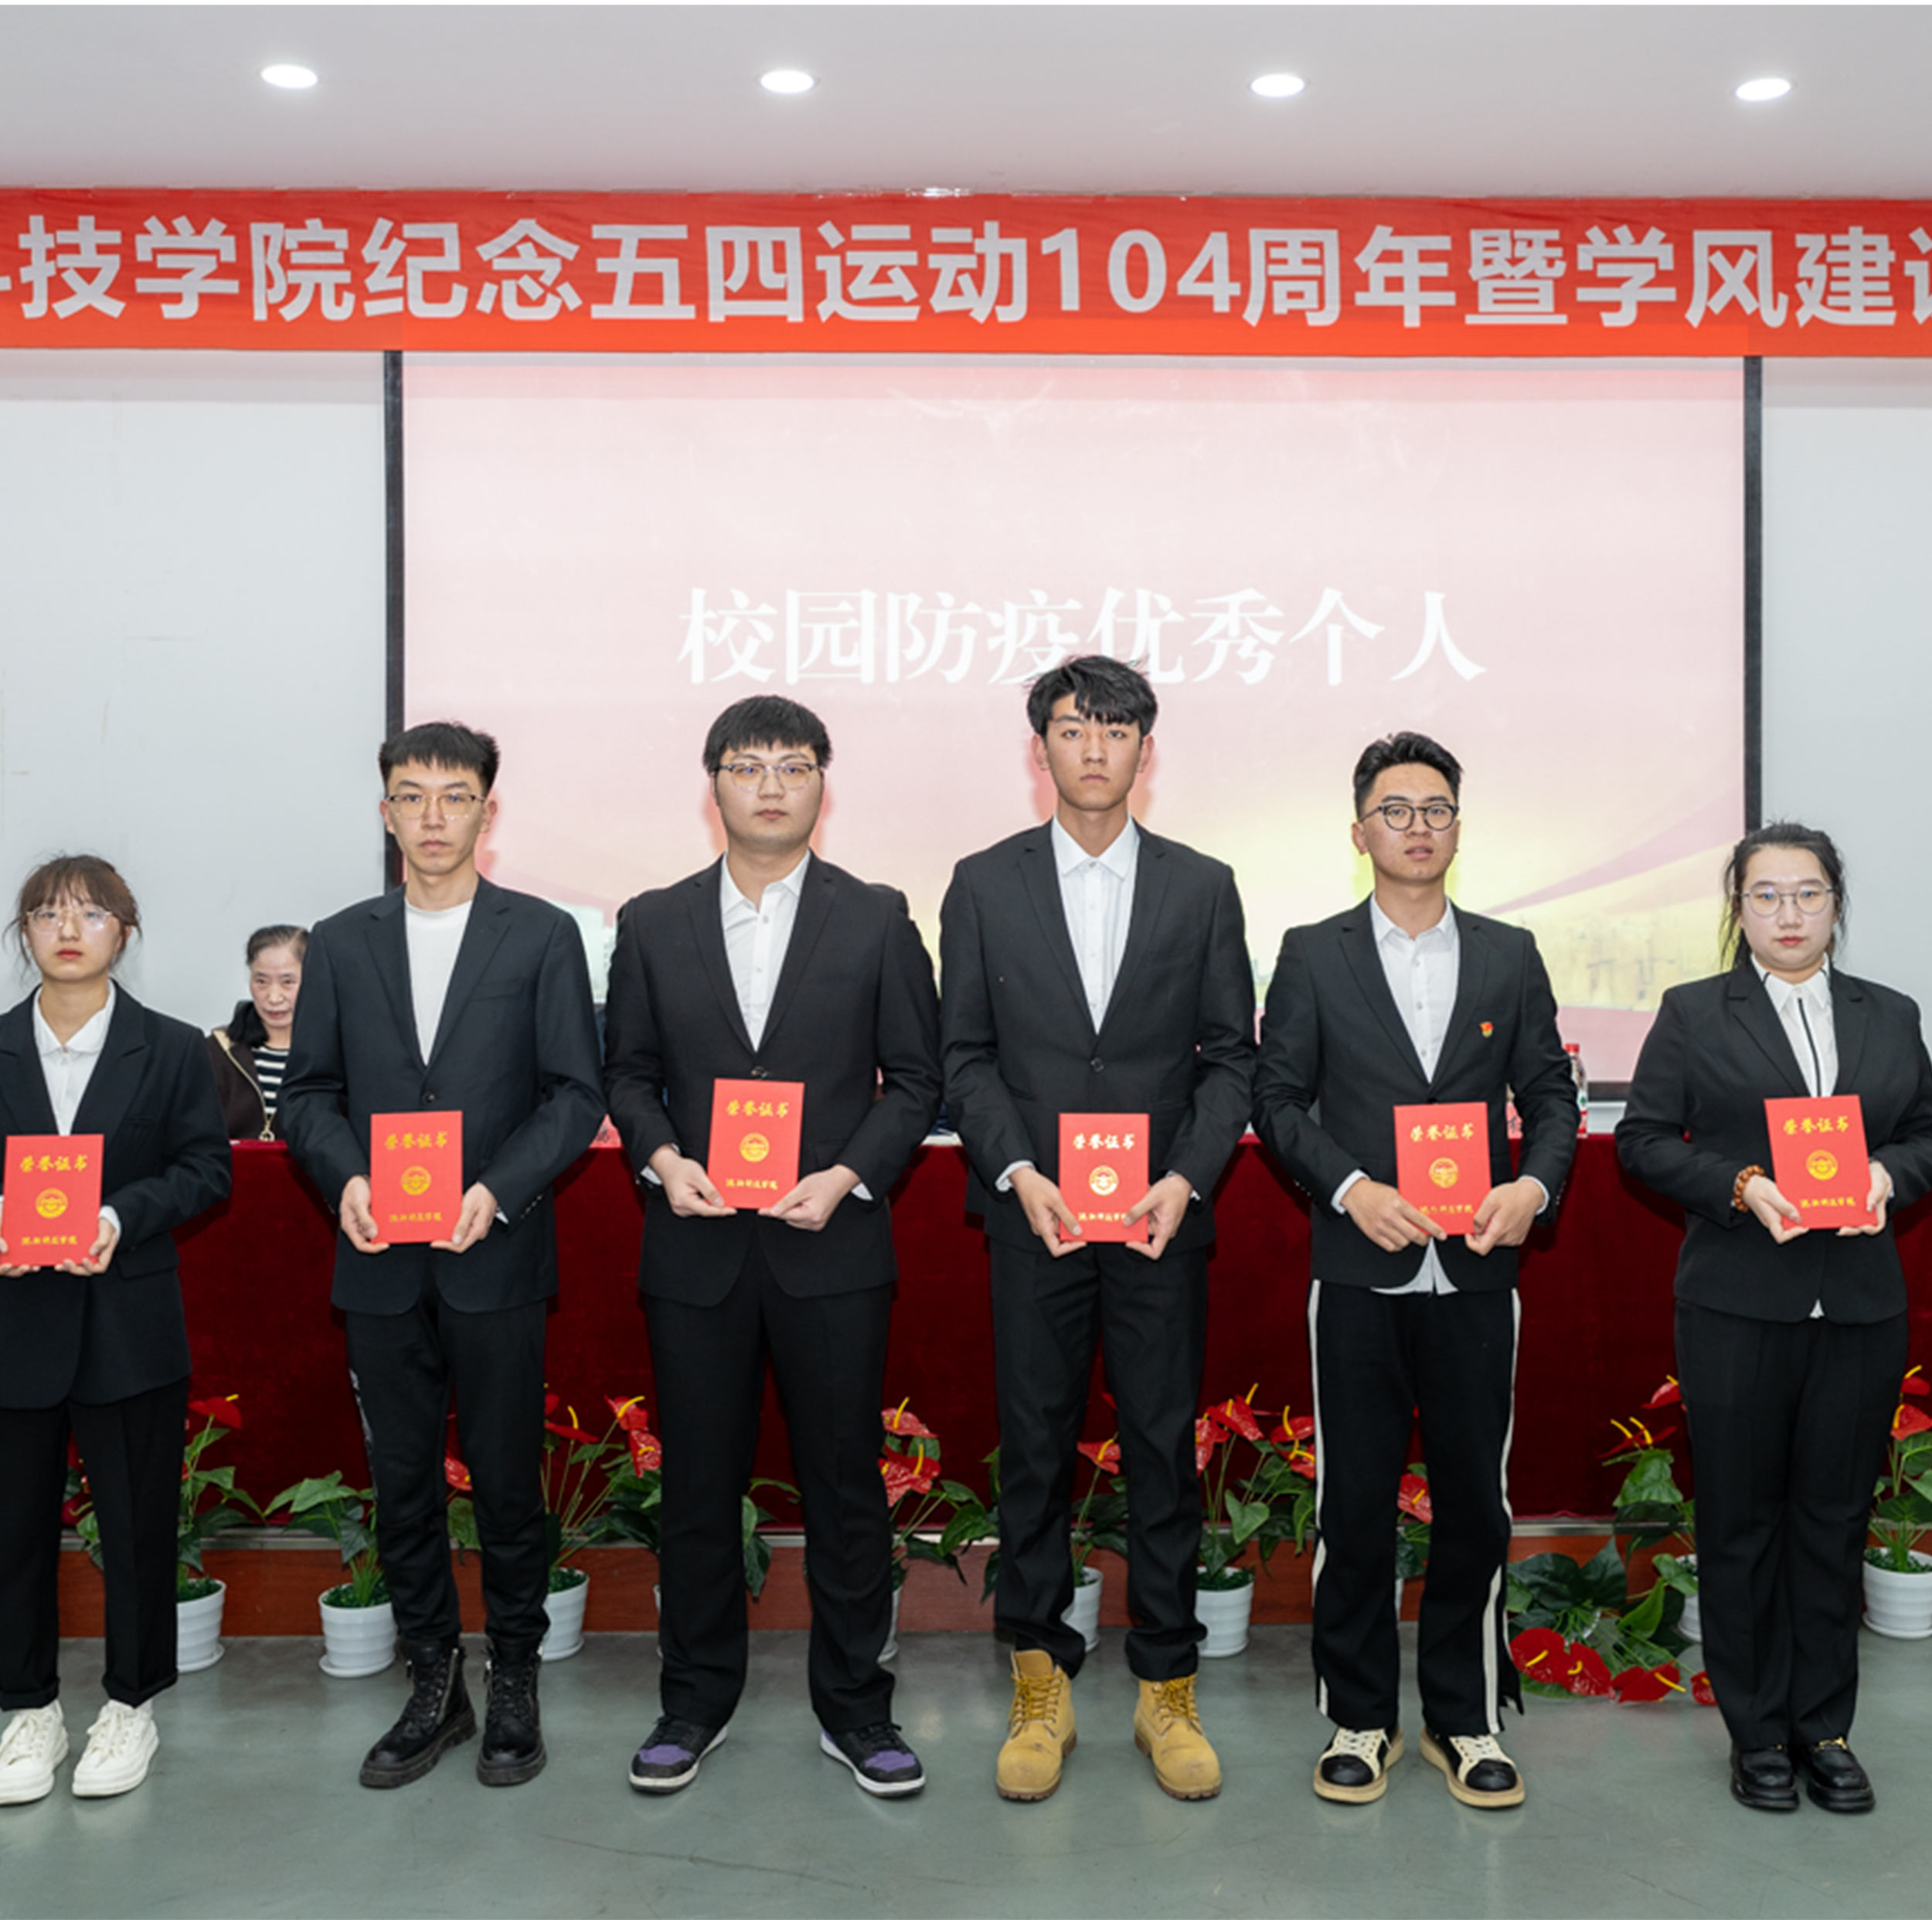 比分网(中国)官方网站召开纪念五四运动104周年暨学风建设表彰大会